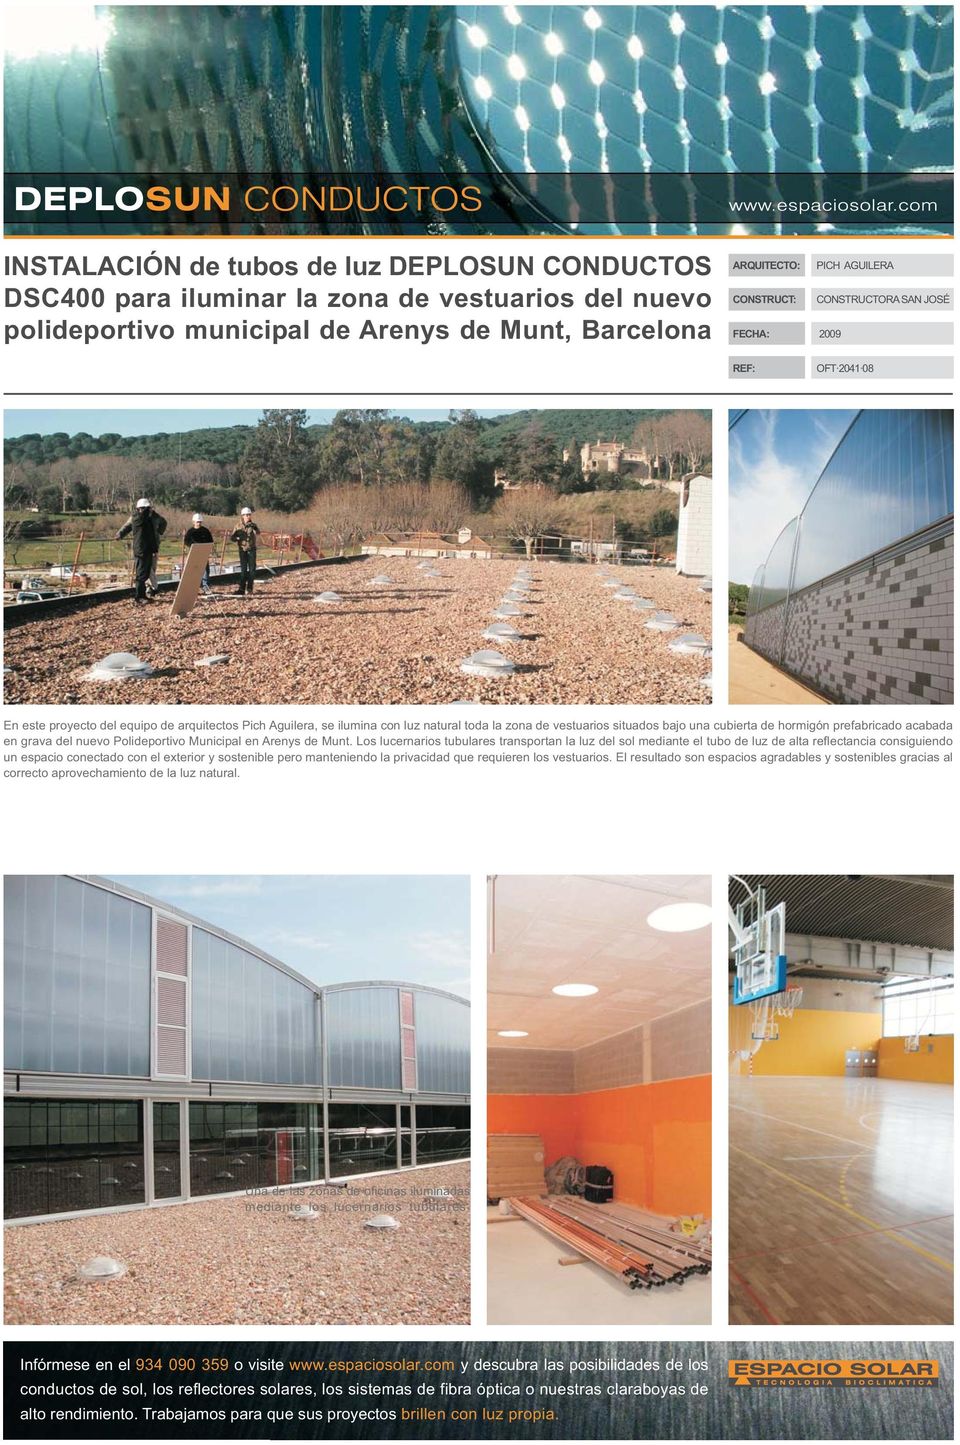 hormigón prefabricado acabada en grava del nuevo Polideportivo Municipal en Arenys de Munt.